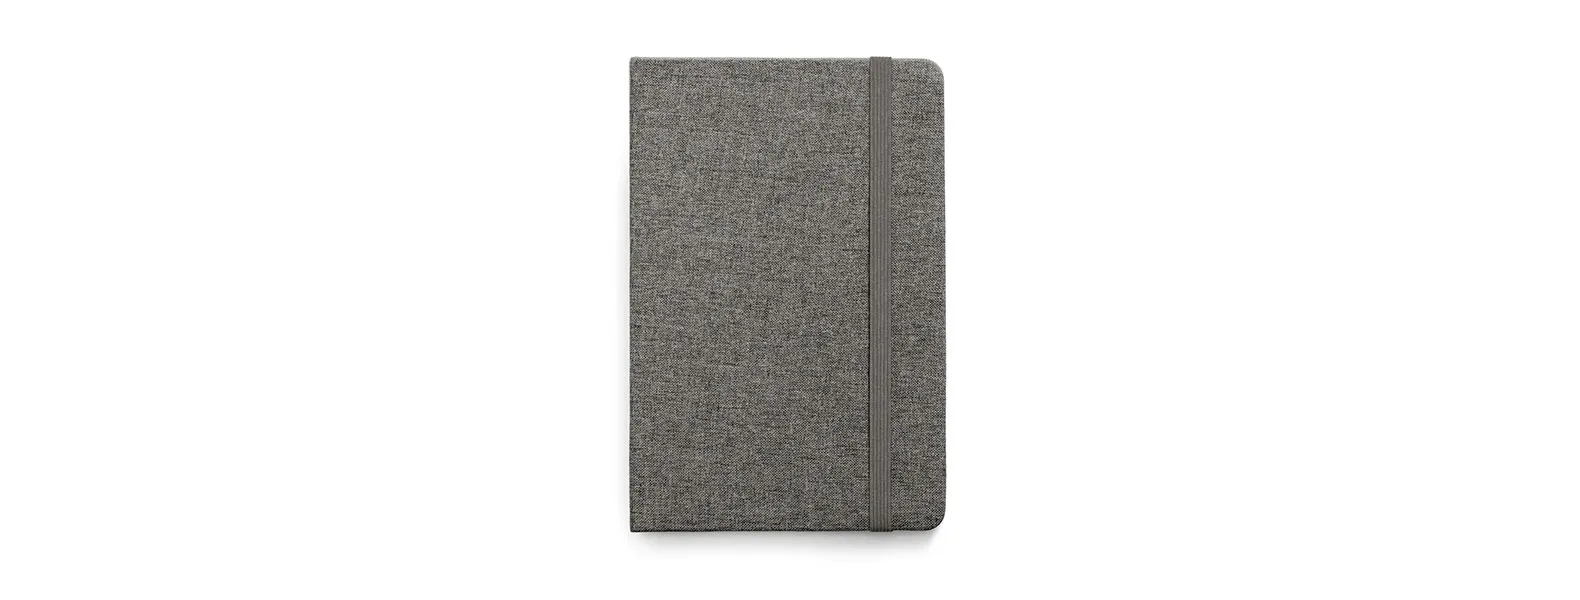 Caderno para anotações com capa dura revestida de Poliéster cinza. Conta com 80 folhas pautadas, marca página e elástico para fechamento. Gramatura da folha de 70 g/m2